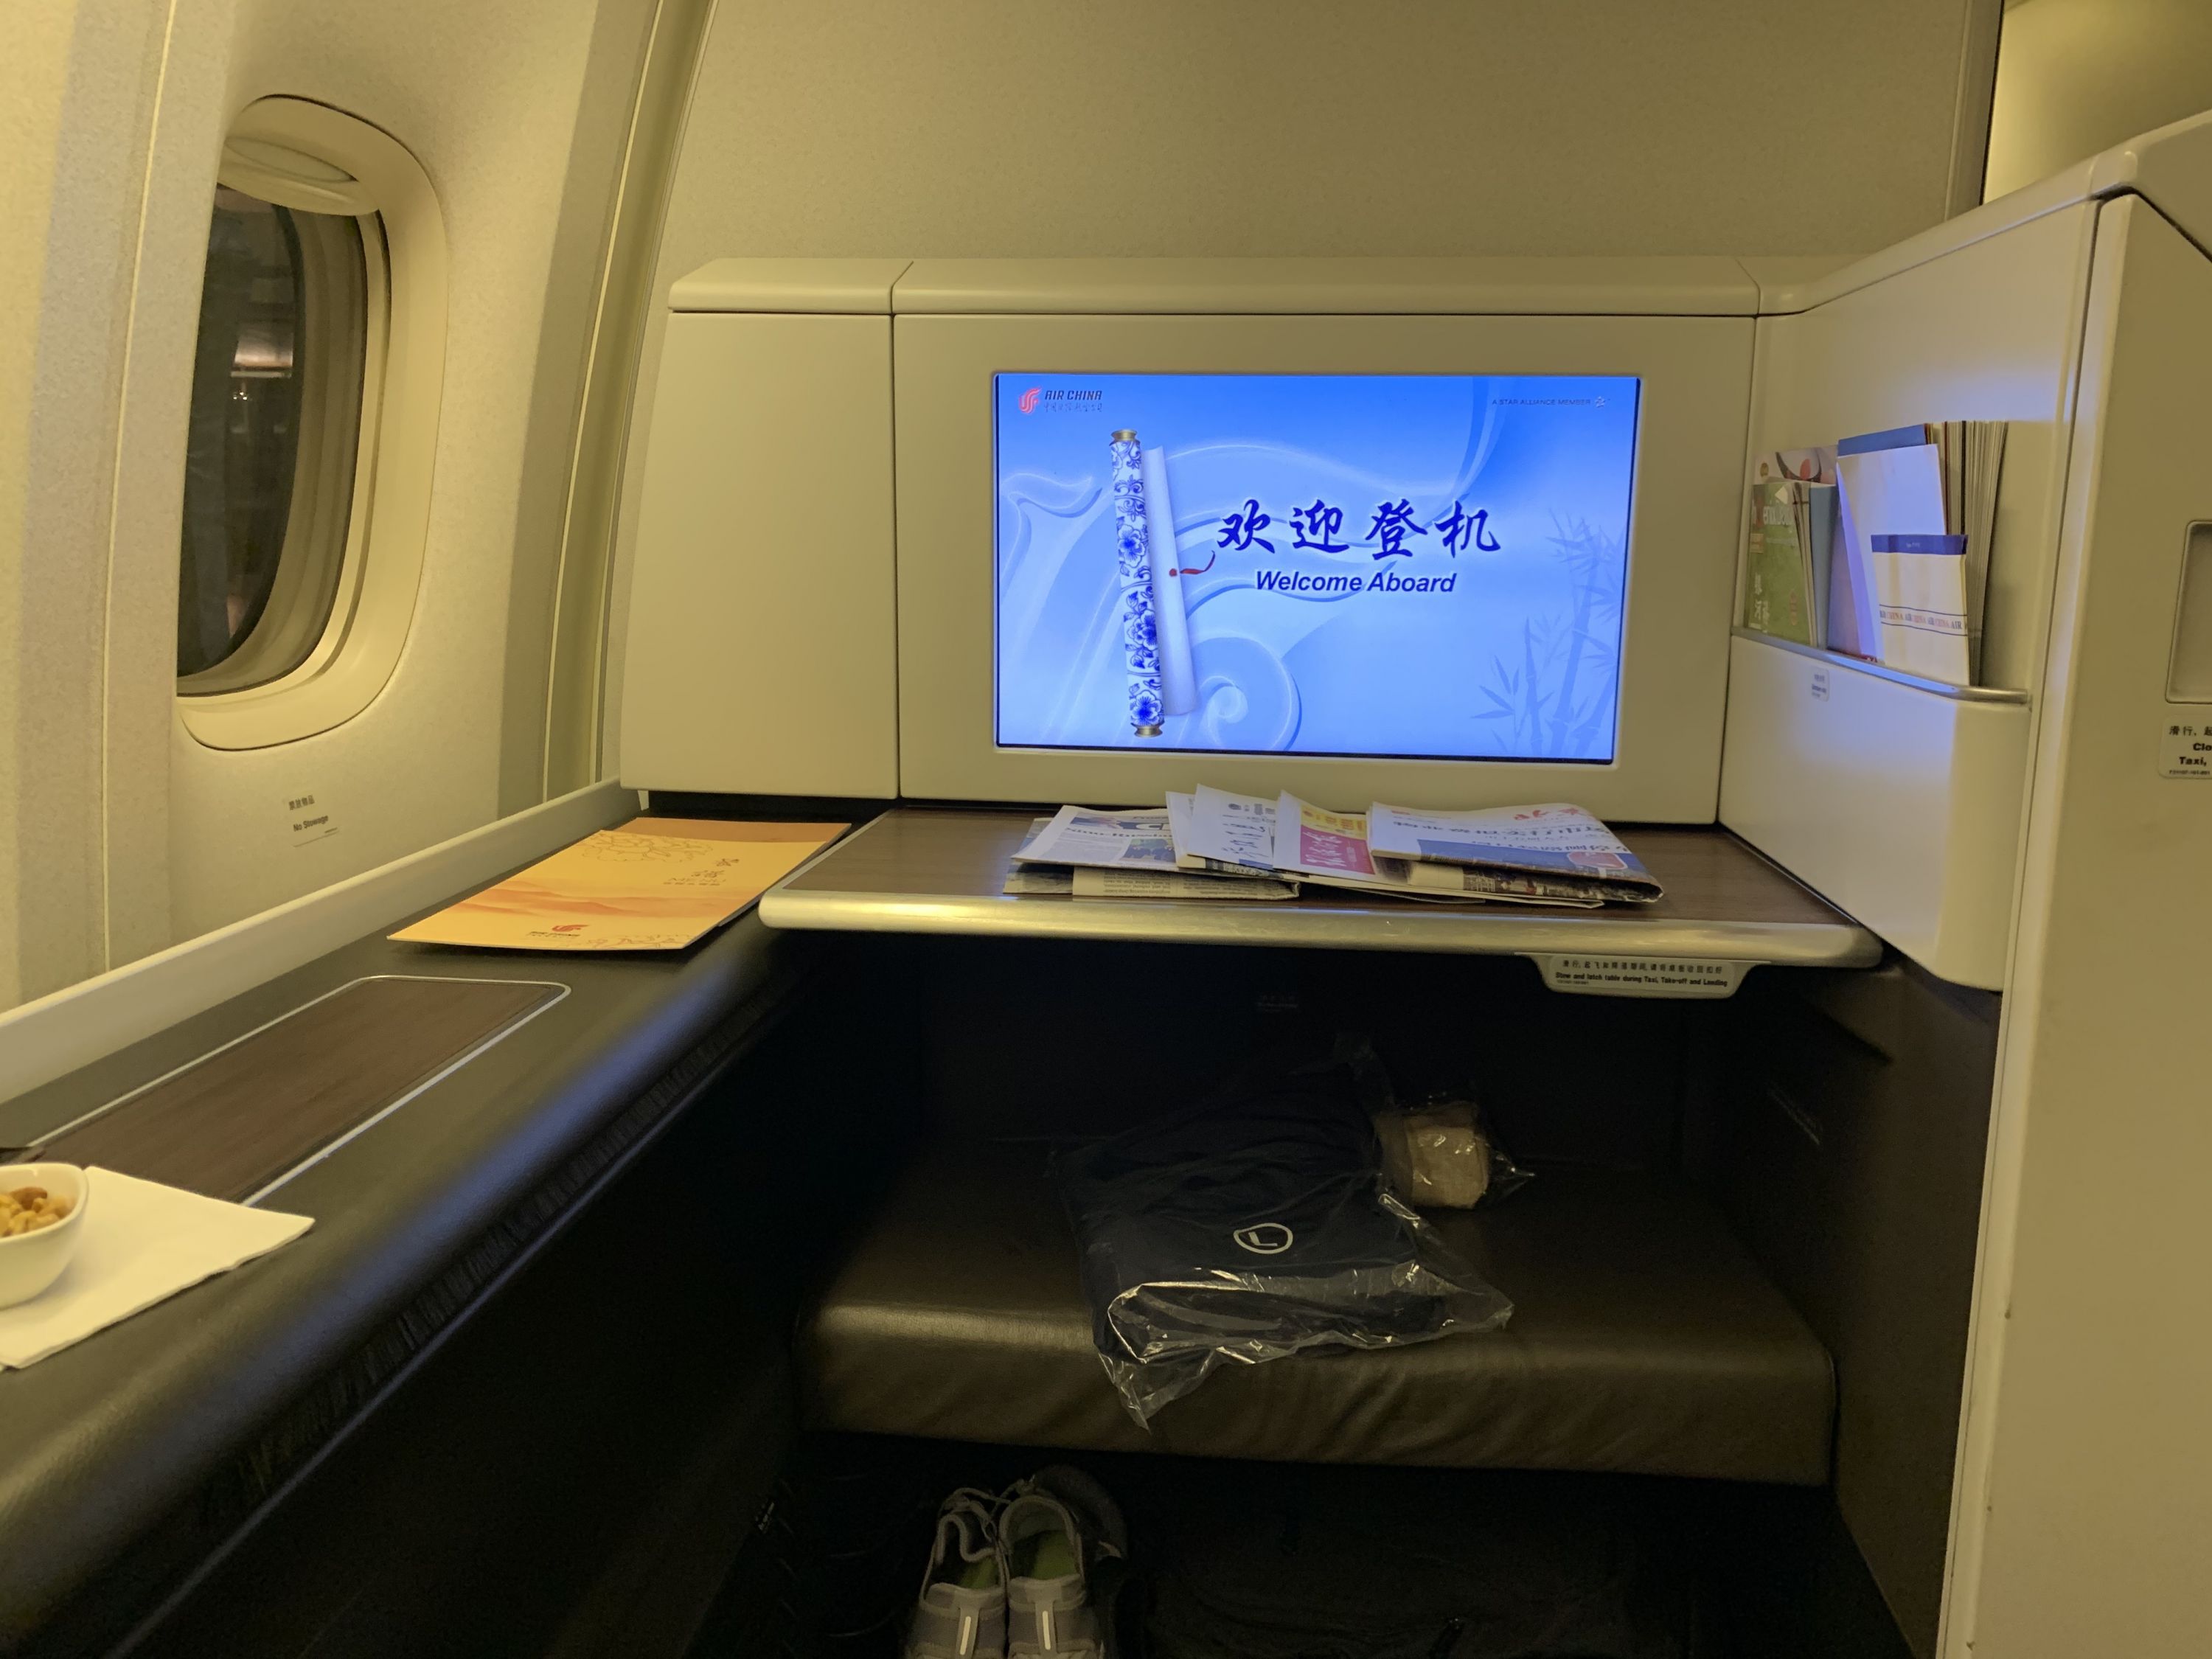 头等舱_B777-300ER体验_南航机上服务 - 中国南方航空官网